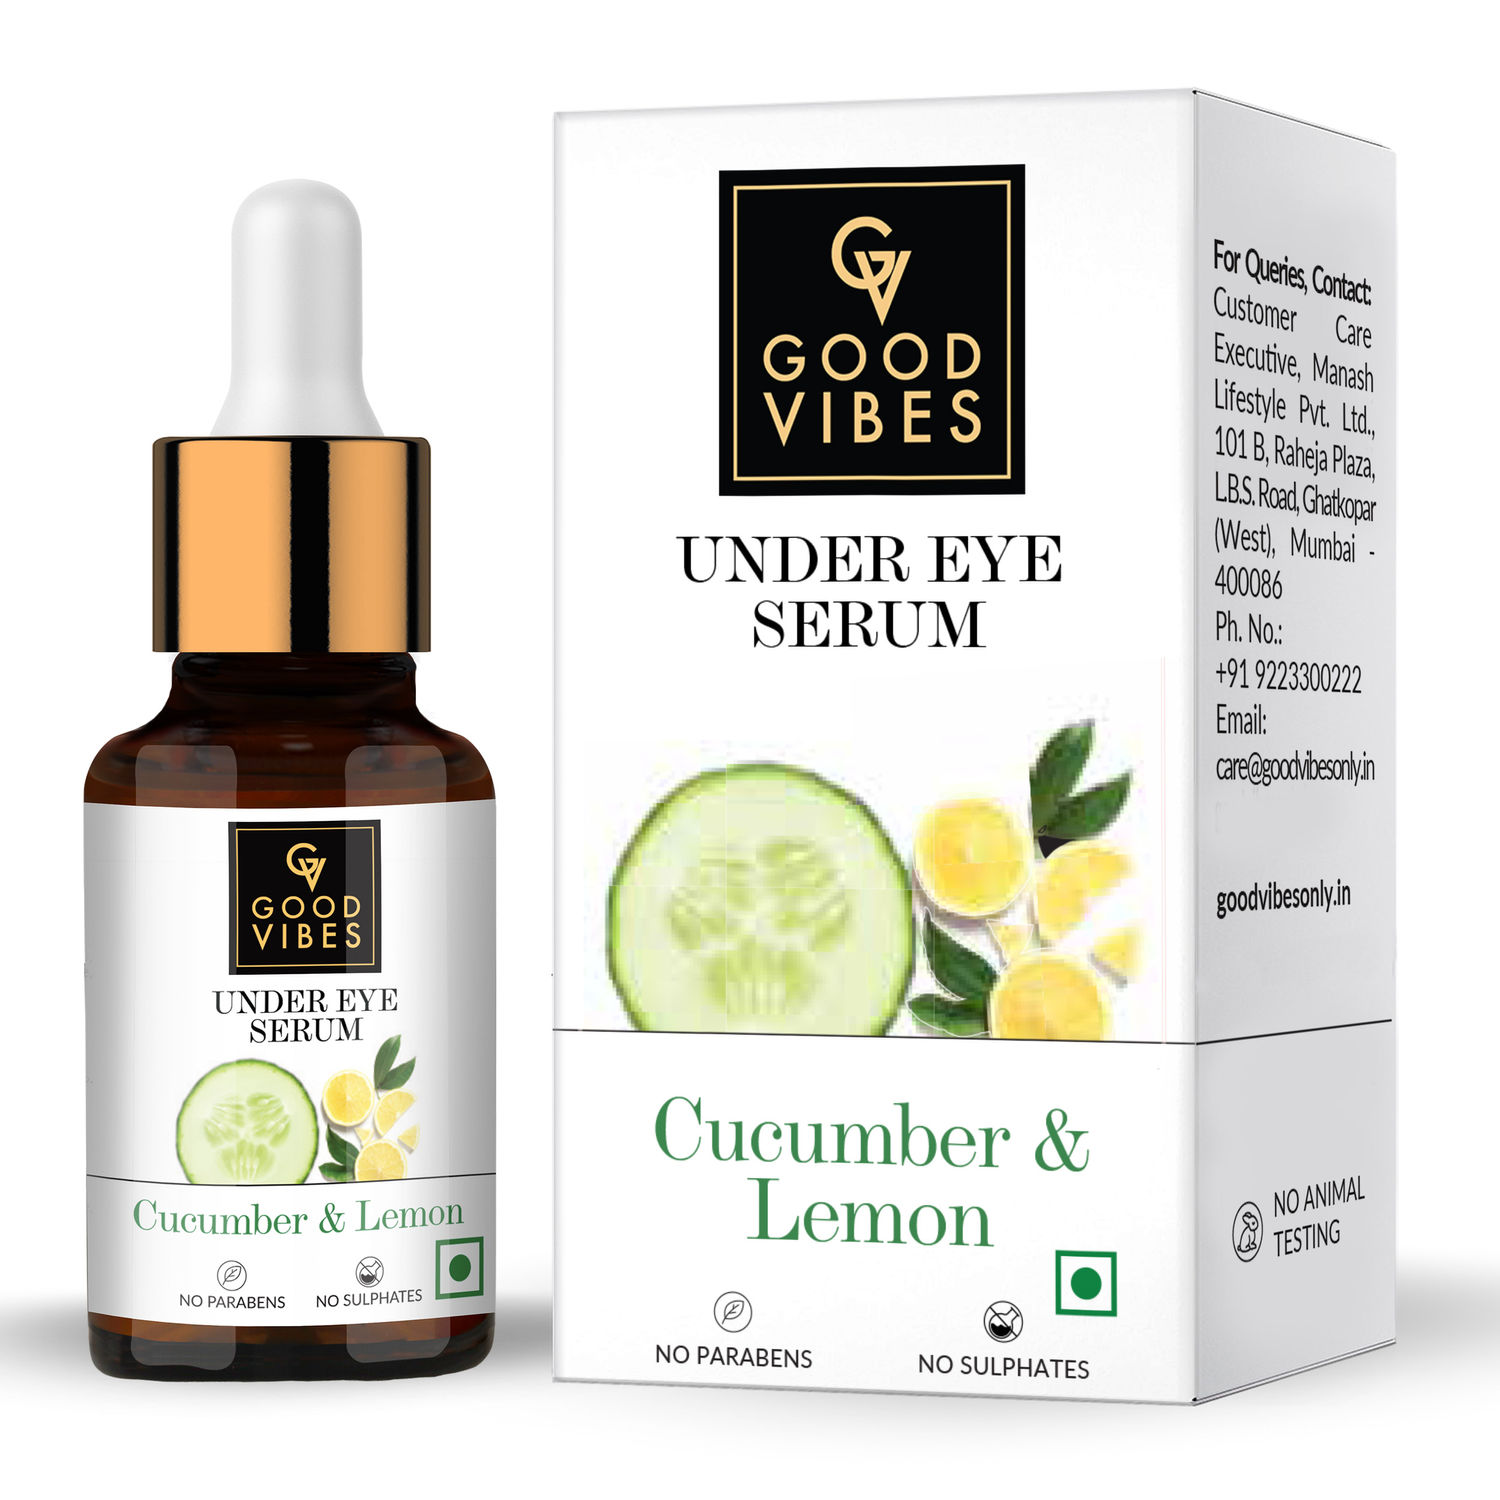 Buy Good Vibes Cucumber & Lemon Under Eye Serum | Anti-Ageing, Rejuvenating, Brightening | No Sulphates, No Parabens, No Animal Testing (10 ml) - Purplle